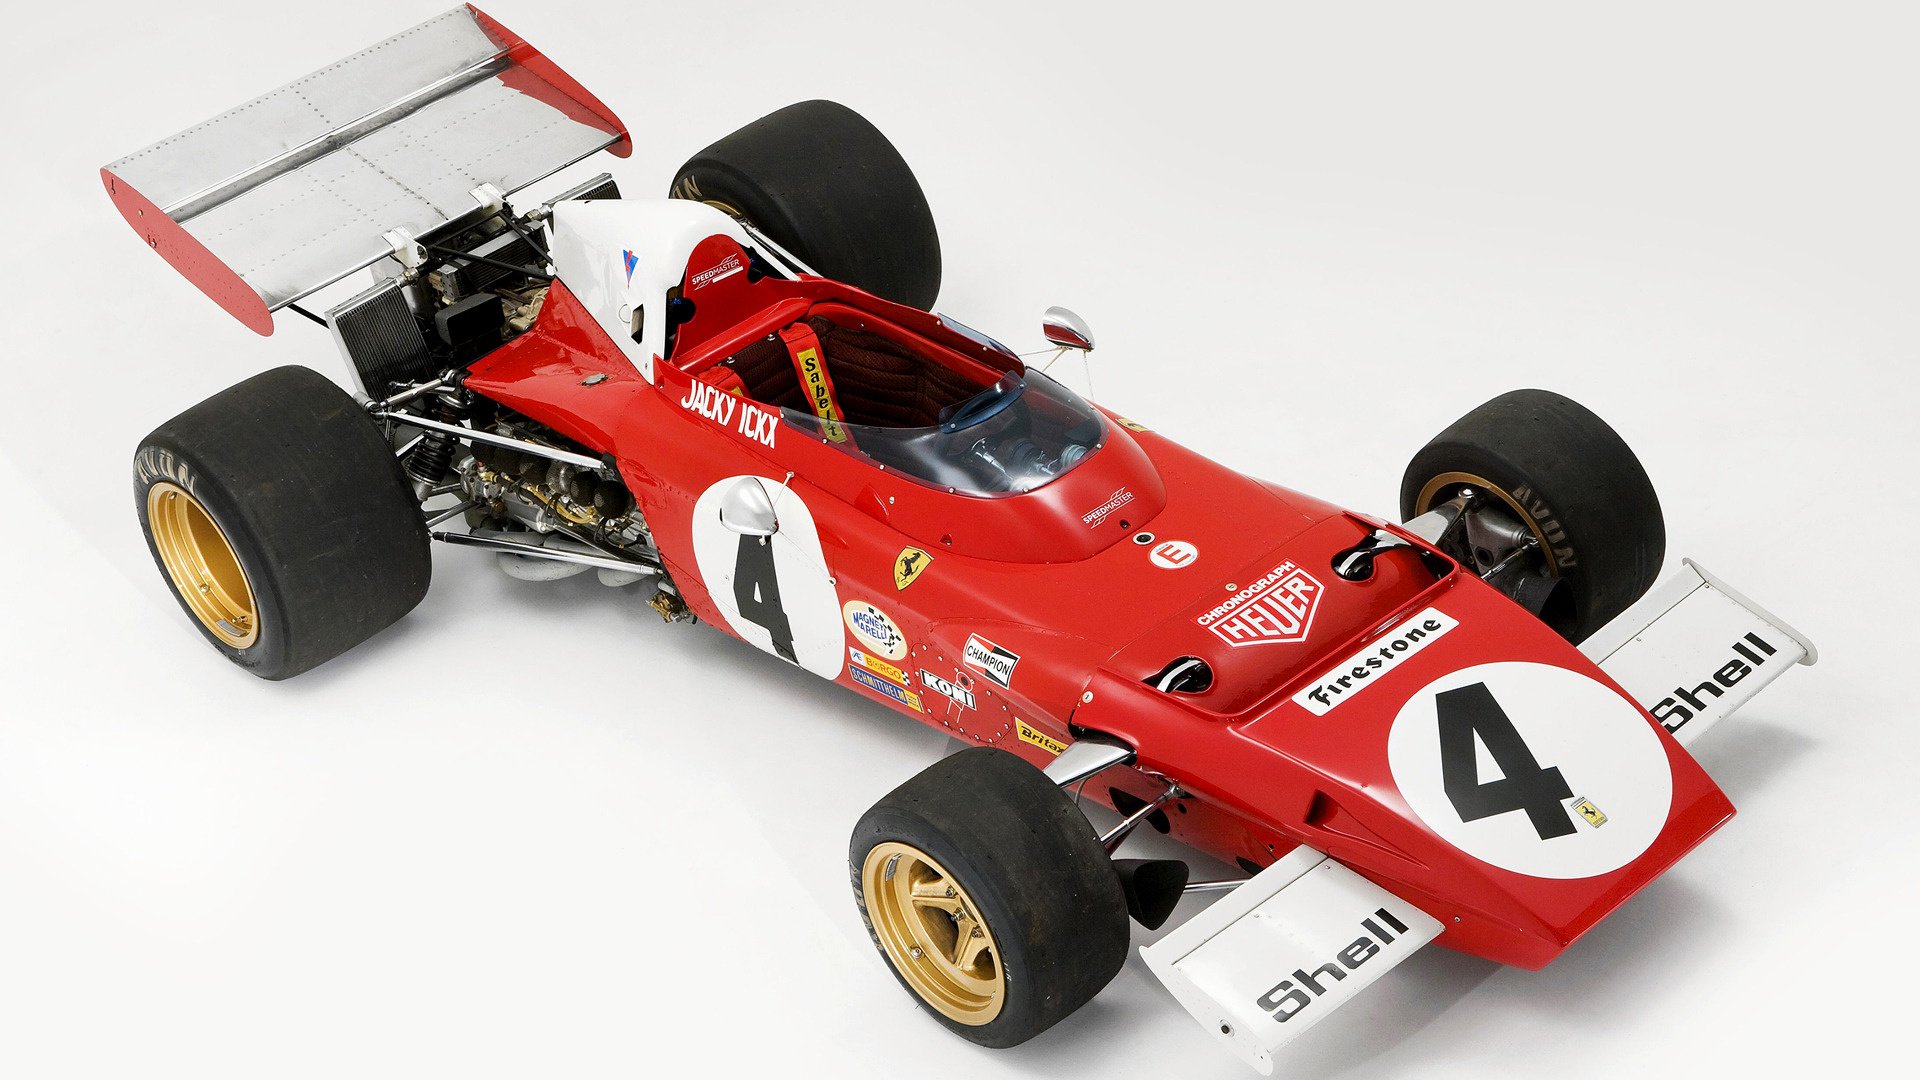 1972 Ferrari 312 B2 HD Wallpaper | Background Image | 1920x1080 | ID:1023306 - Wallpaper Abyss